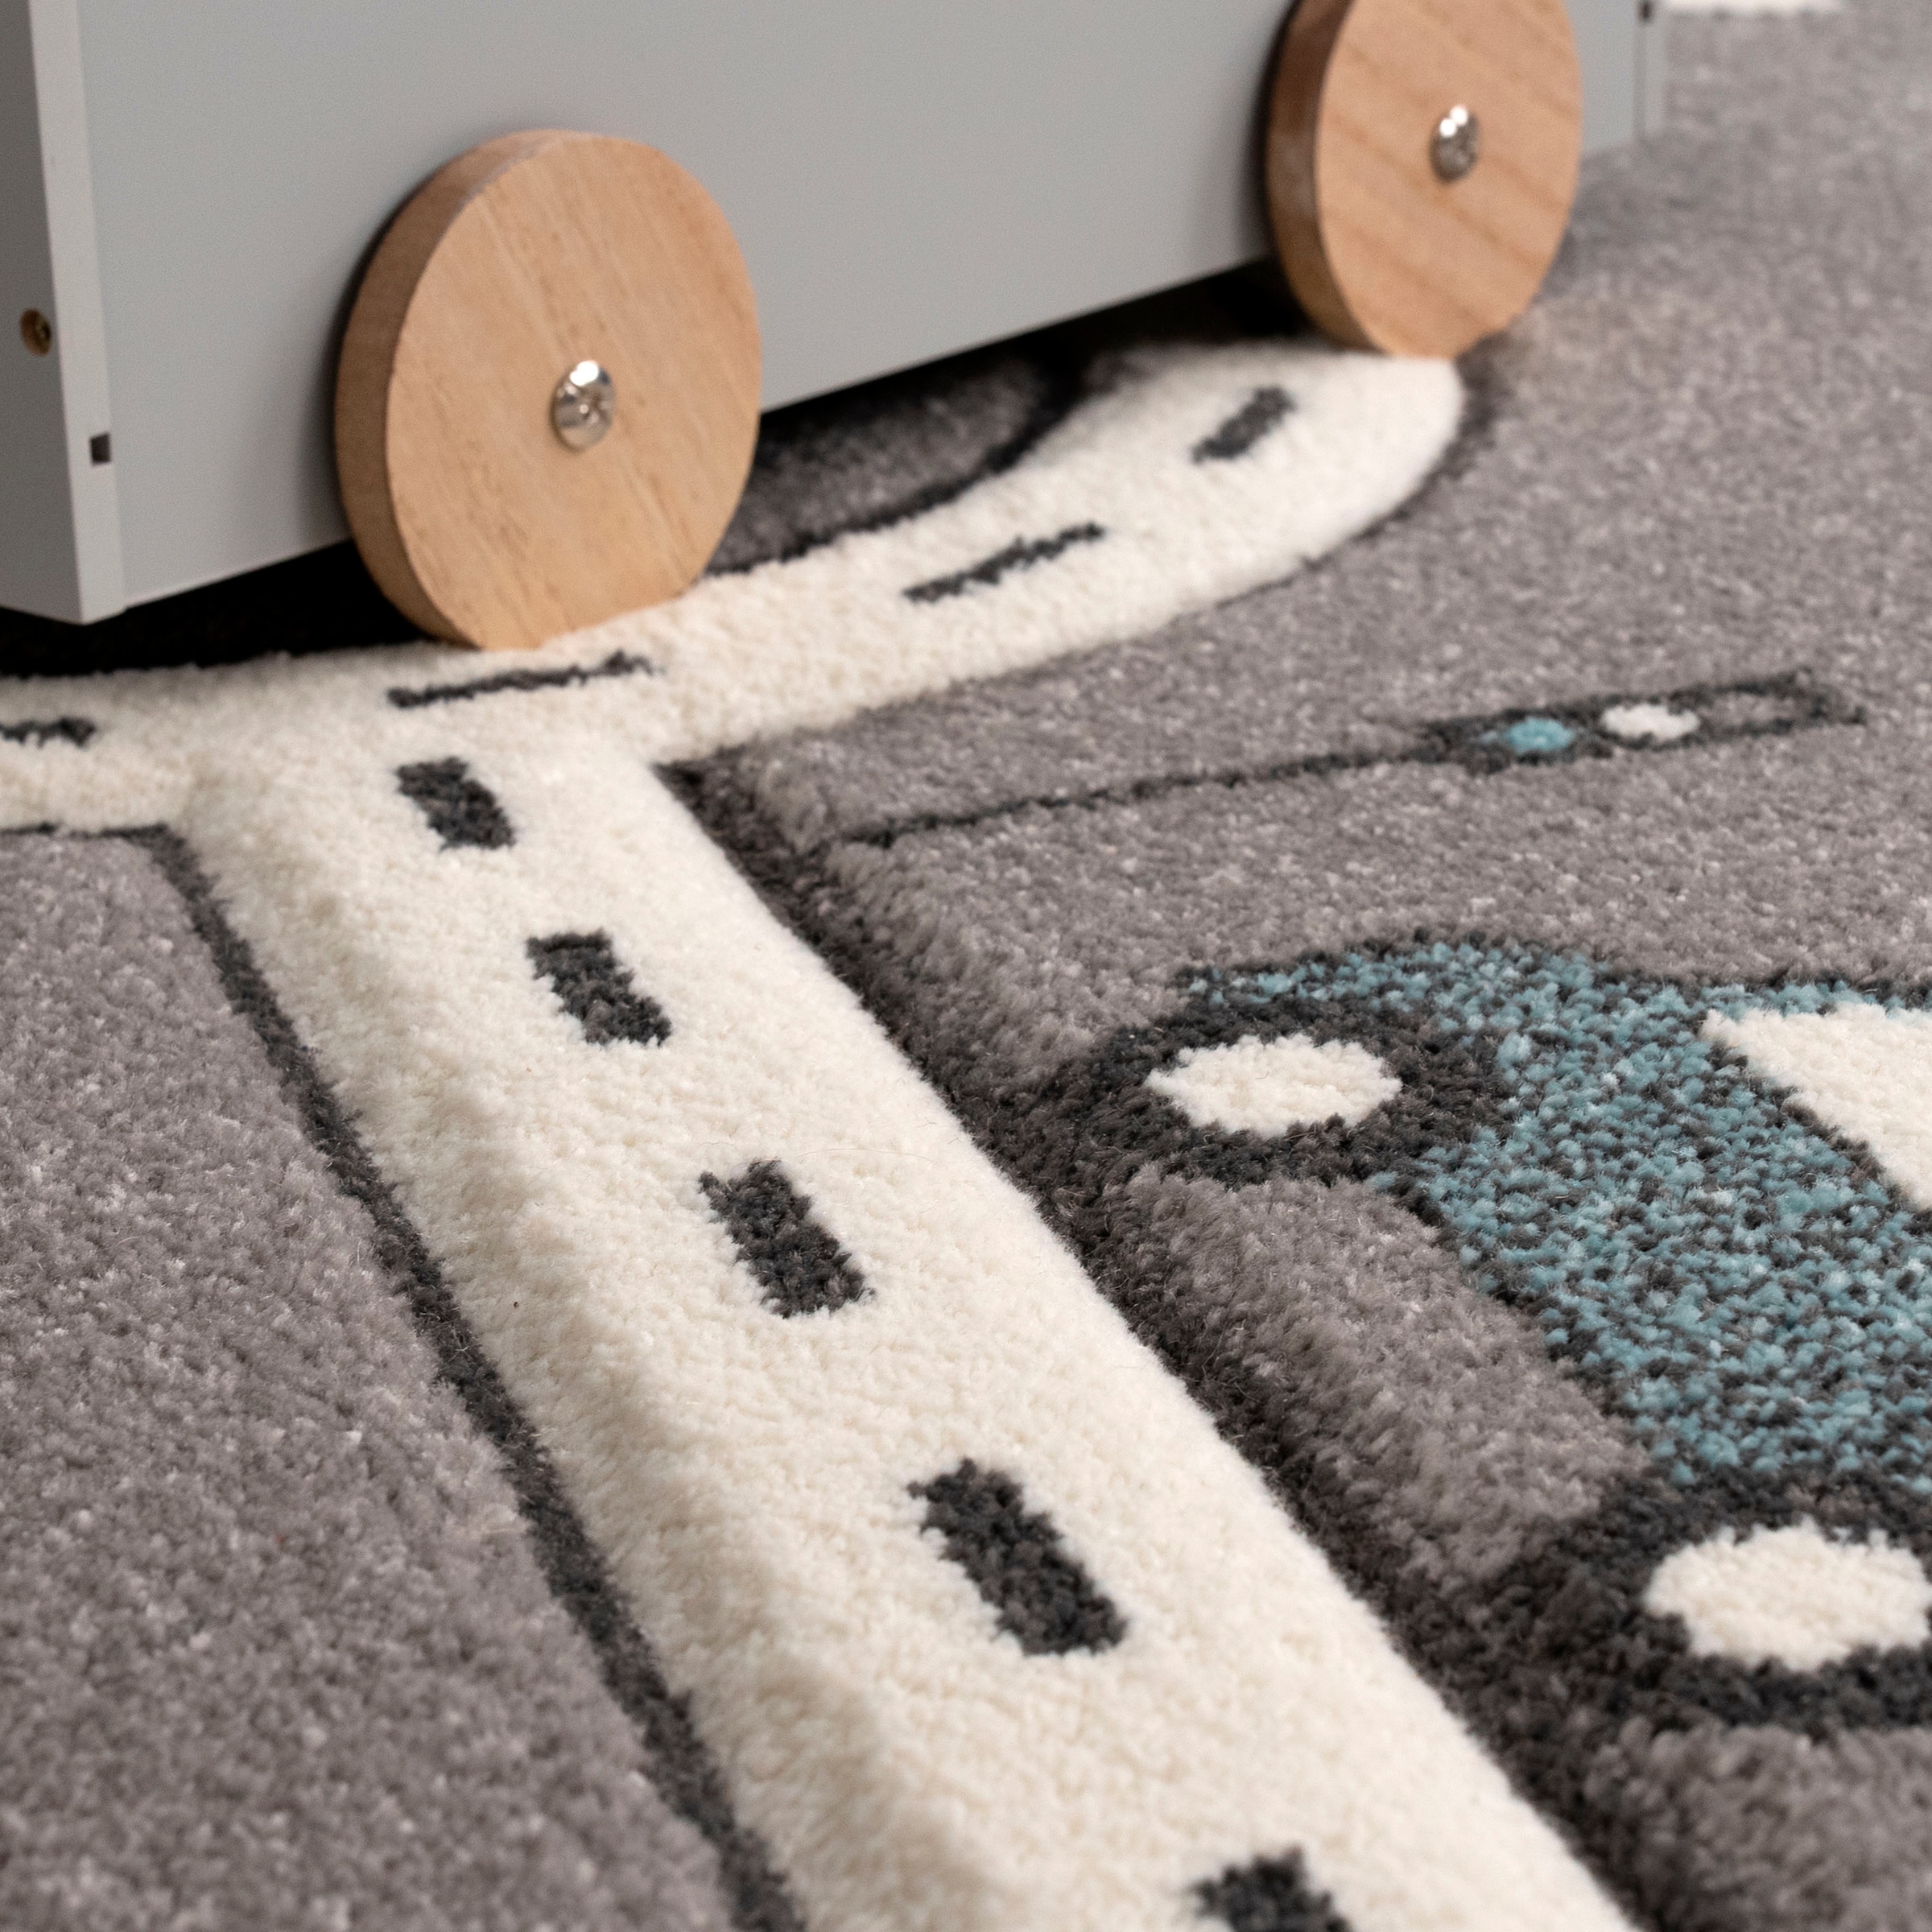 Paco Home Kinder-Teppich, Teppich Mit Straßen-Design und Auto